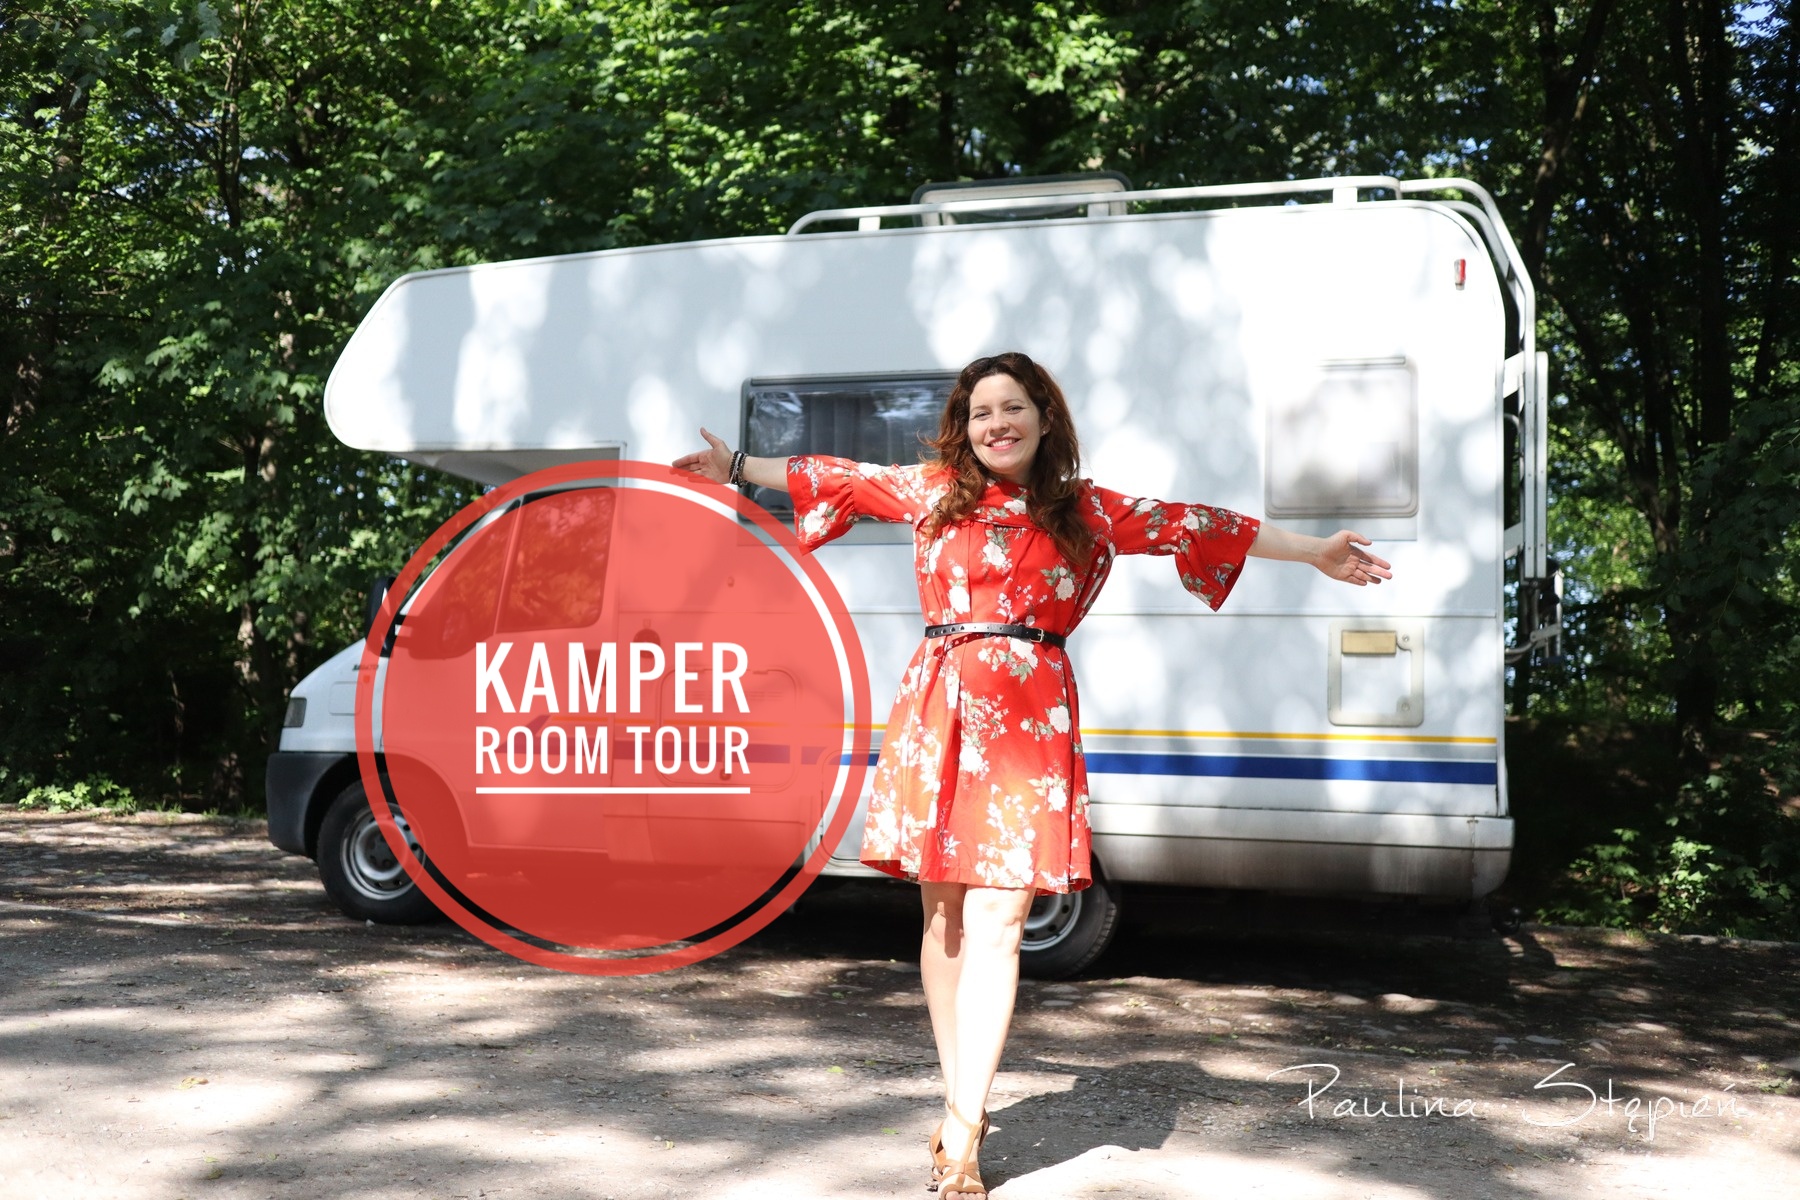 Kamper room tour